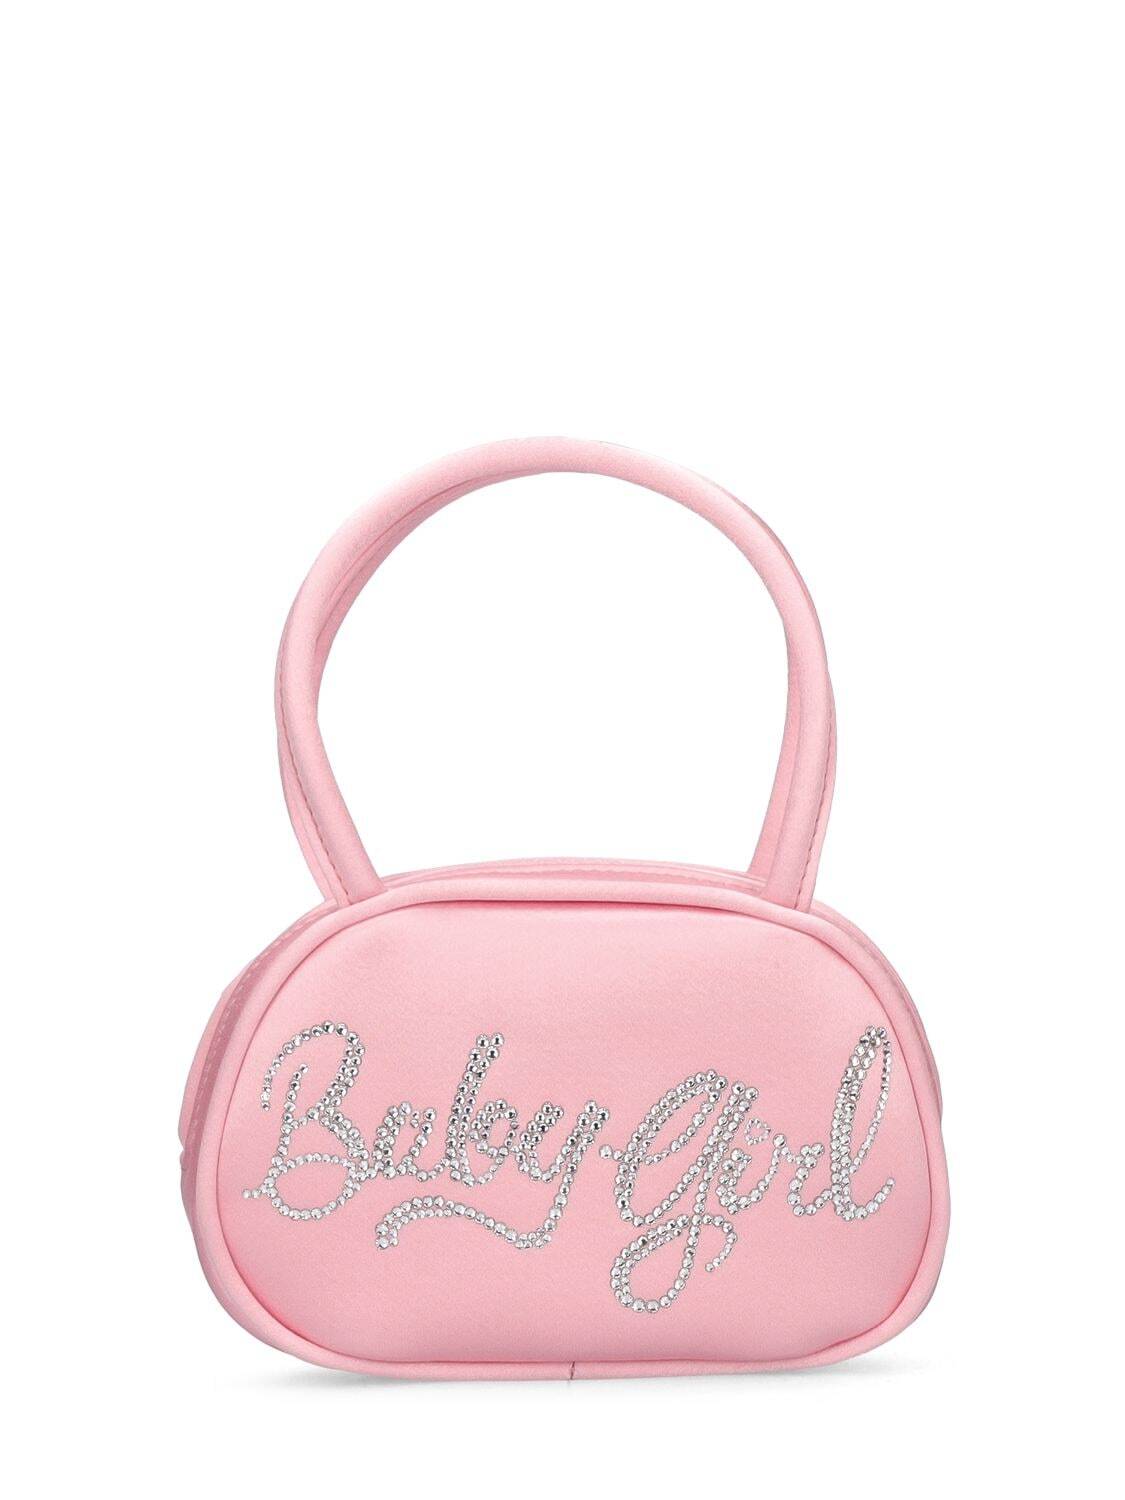 AMINA MUADDI Superamini Babygirl Satin Top Handle Bag in pink